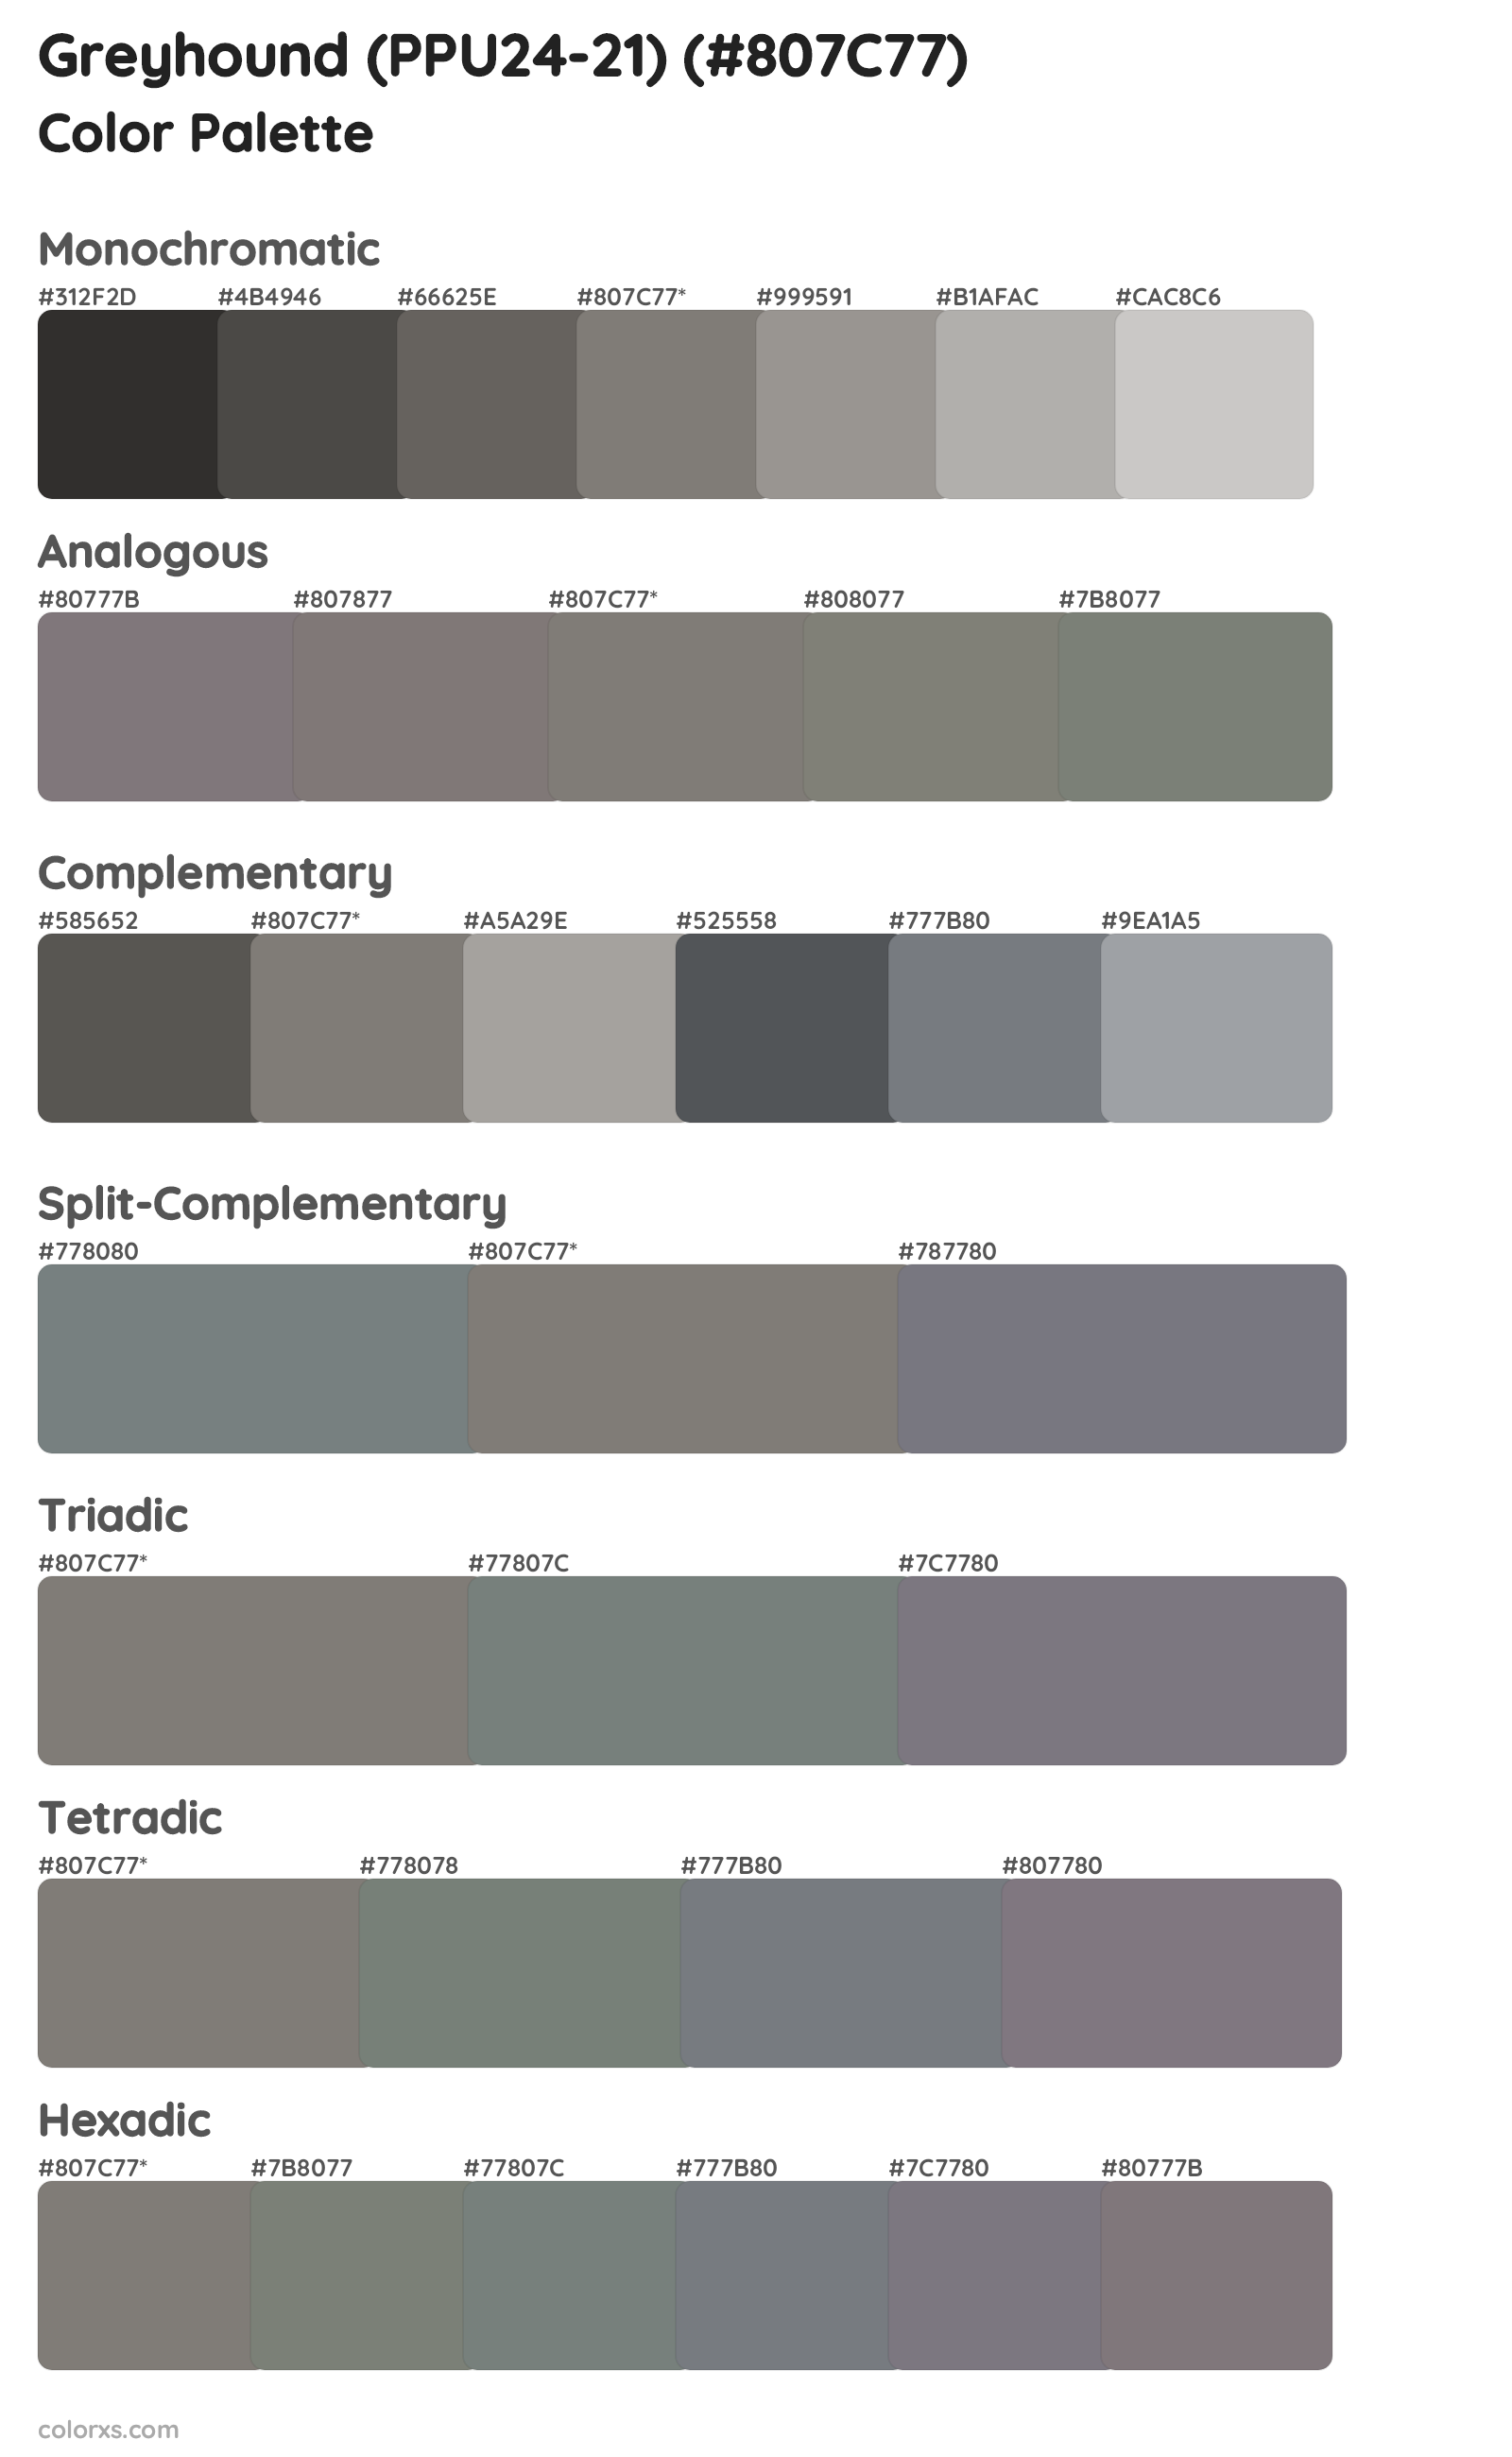 Greyhound (PPU24-21) Color Scheme Palettes